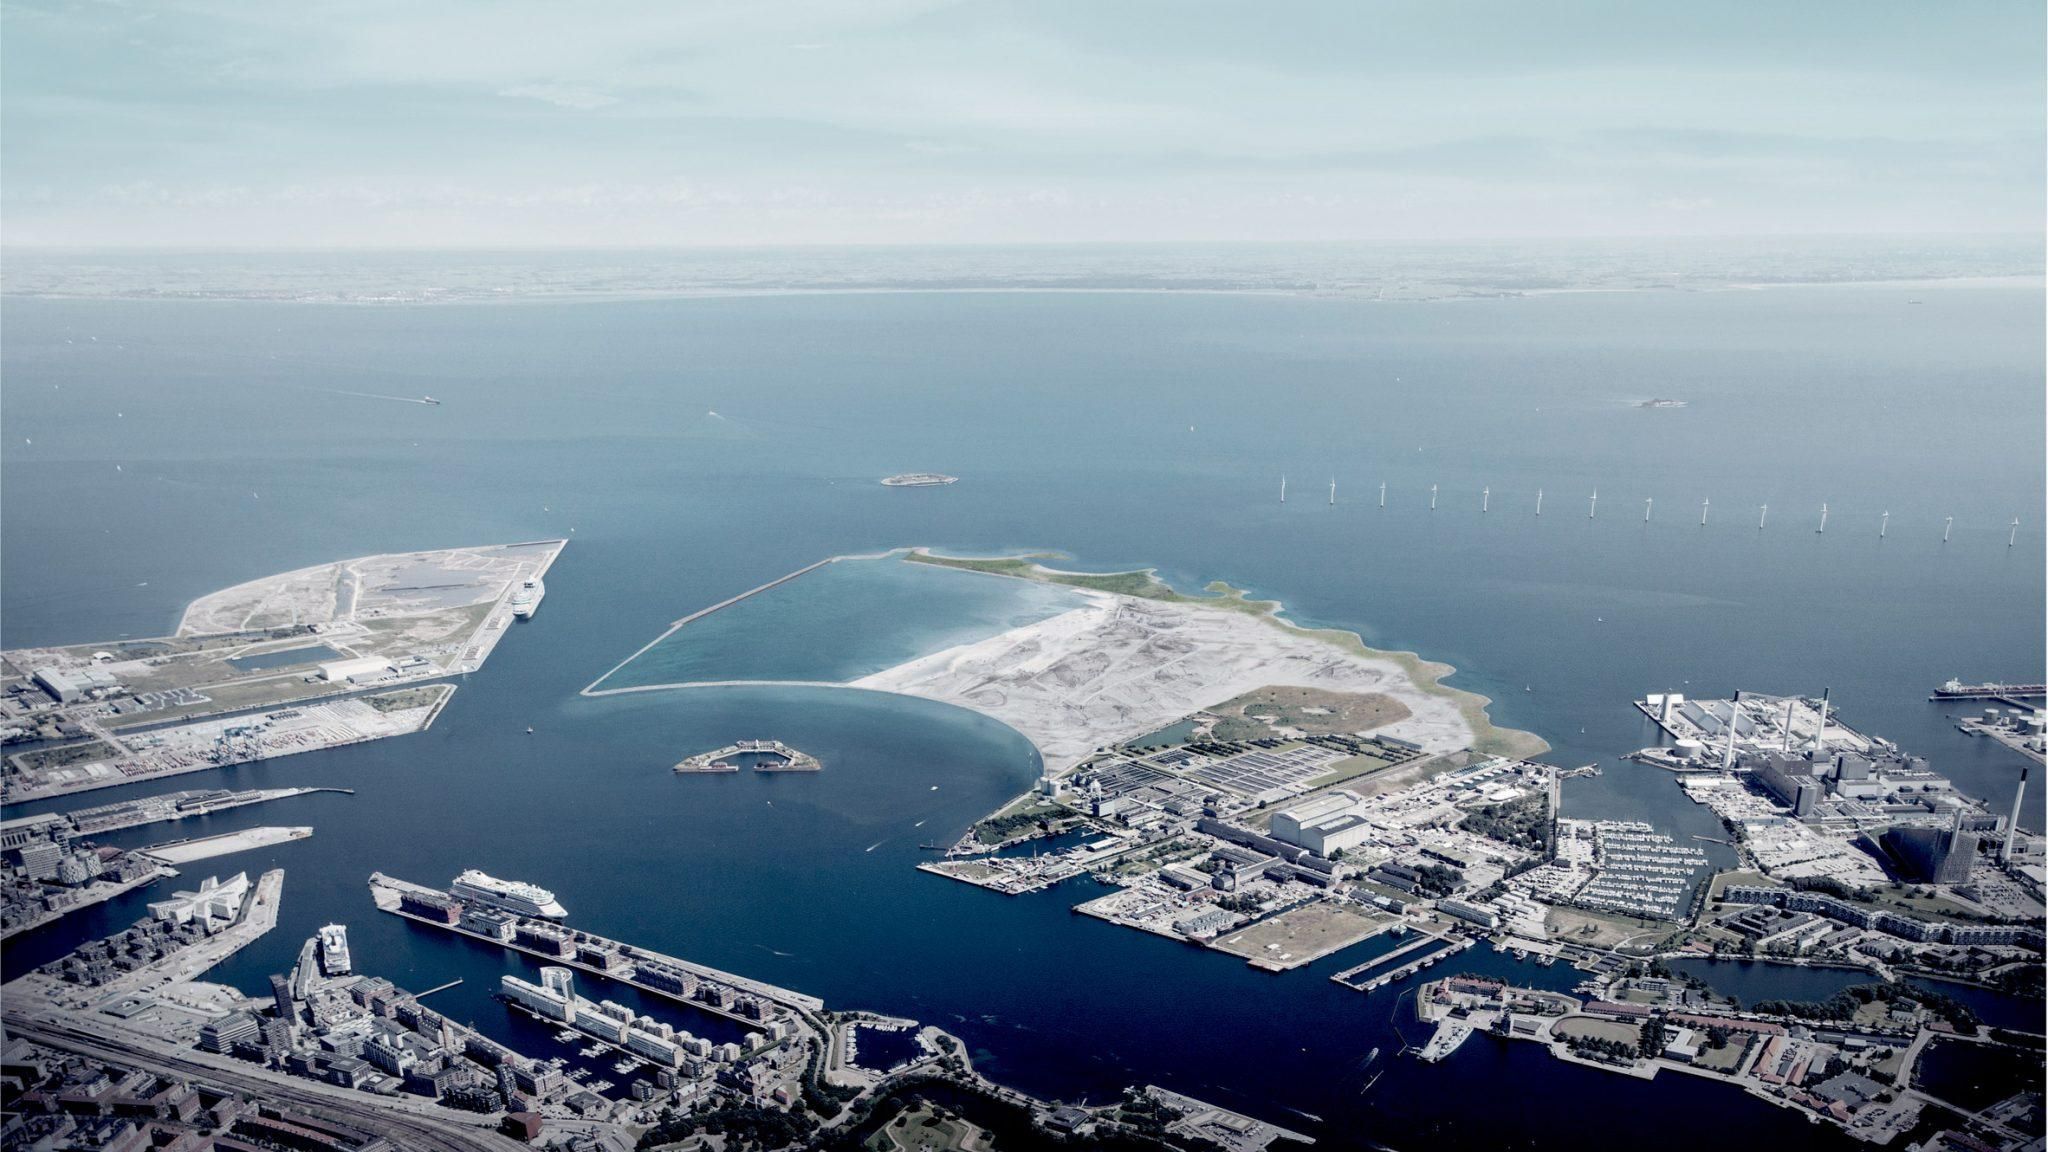 Життя на воді: у гавані Копенгагена планують звести штучний острів